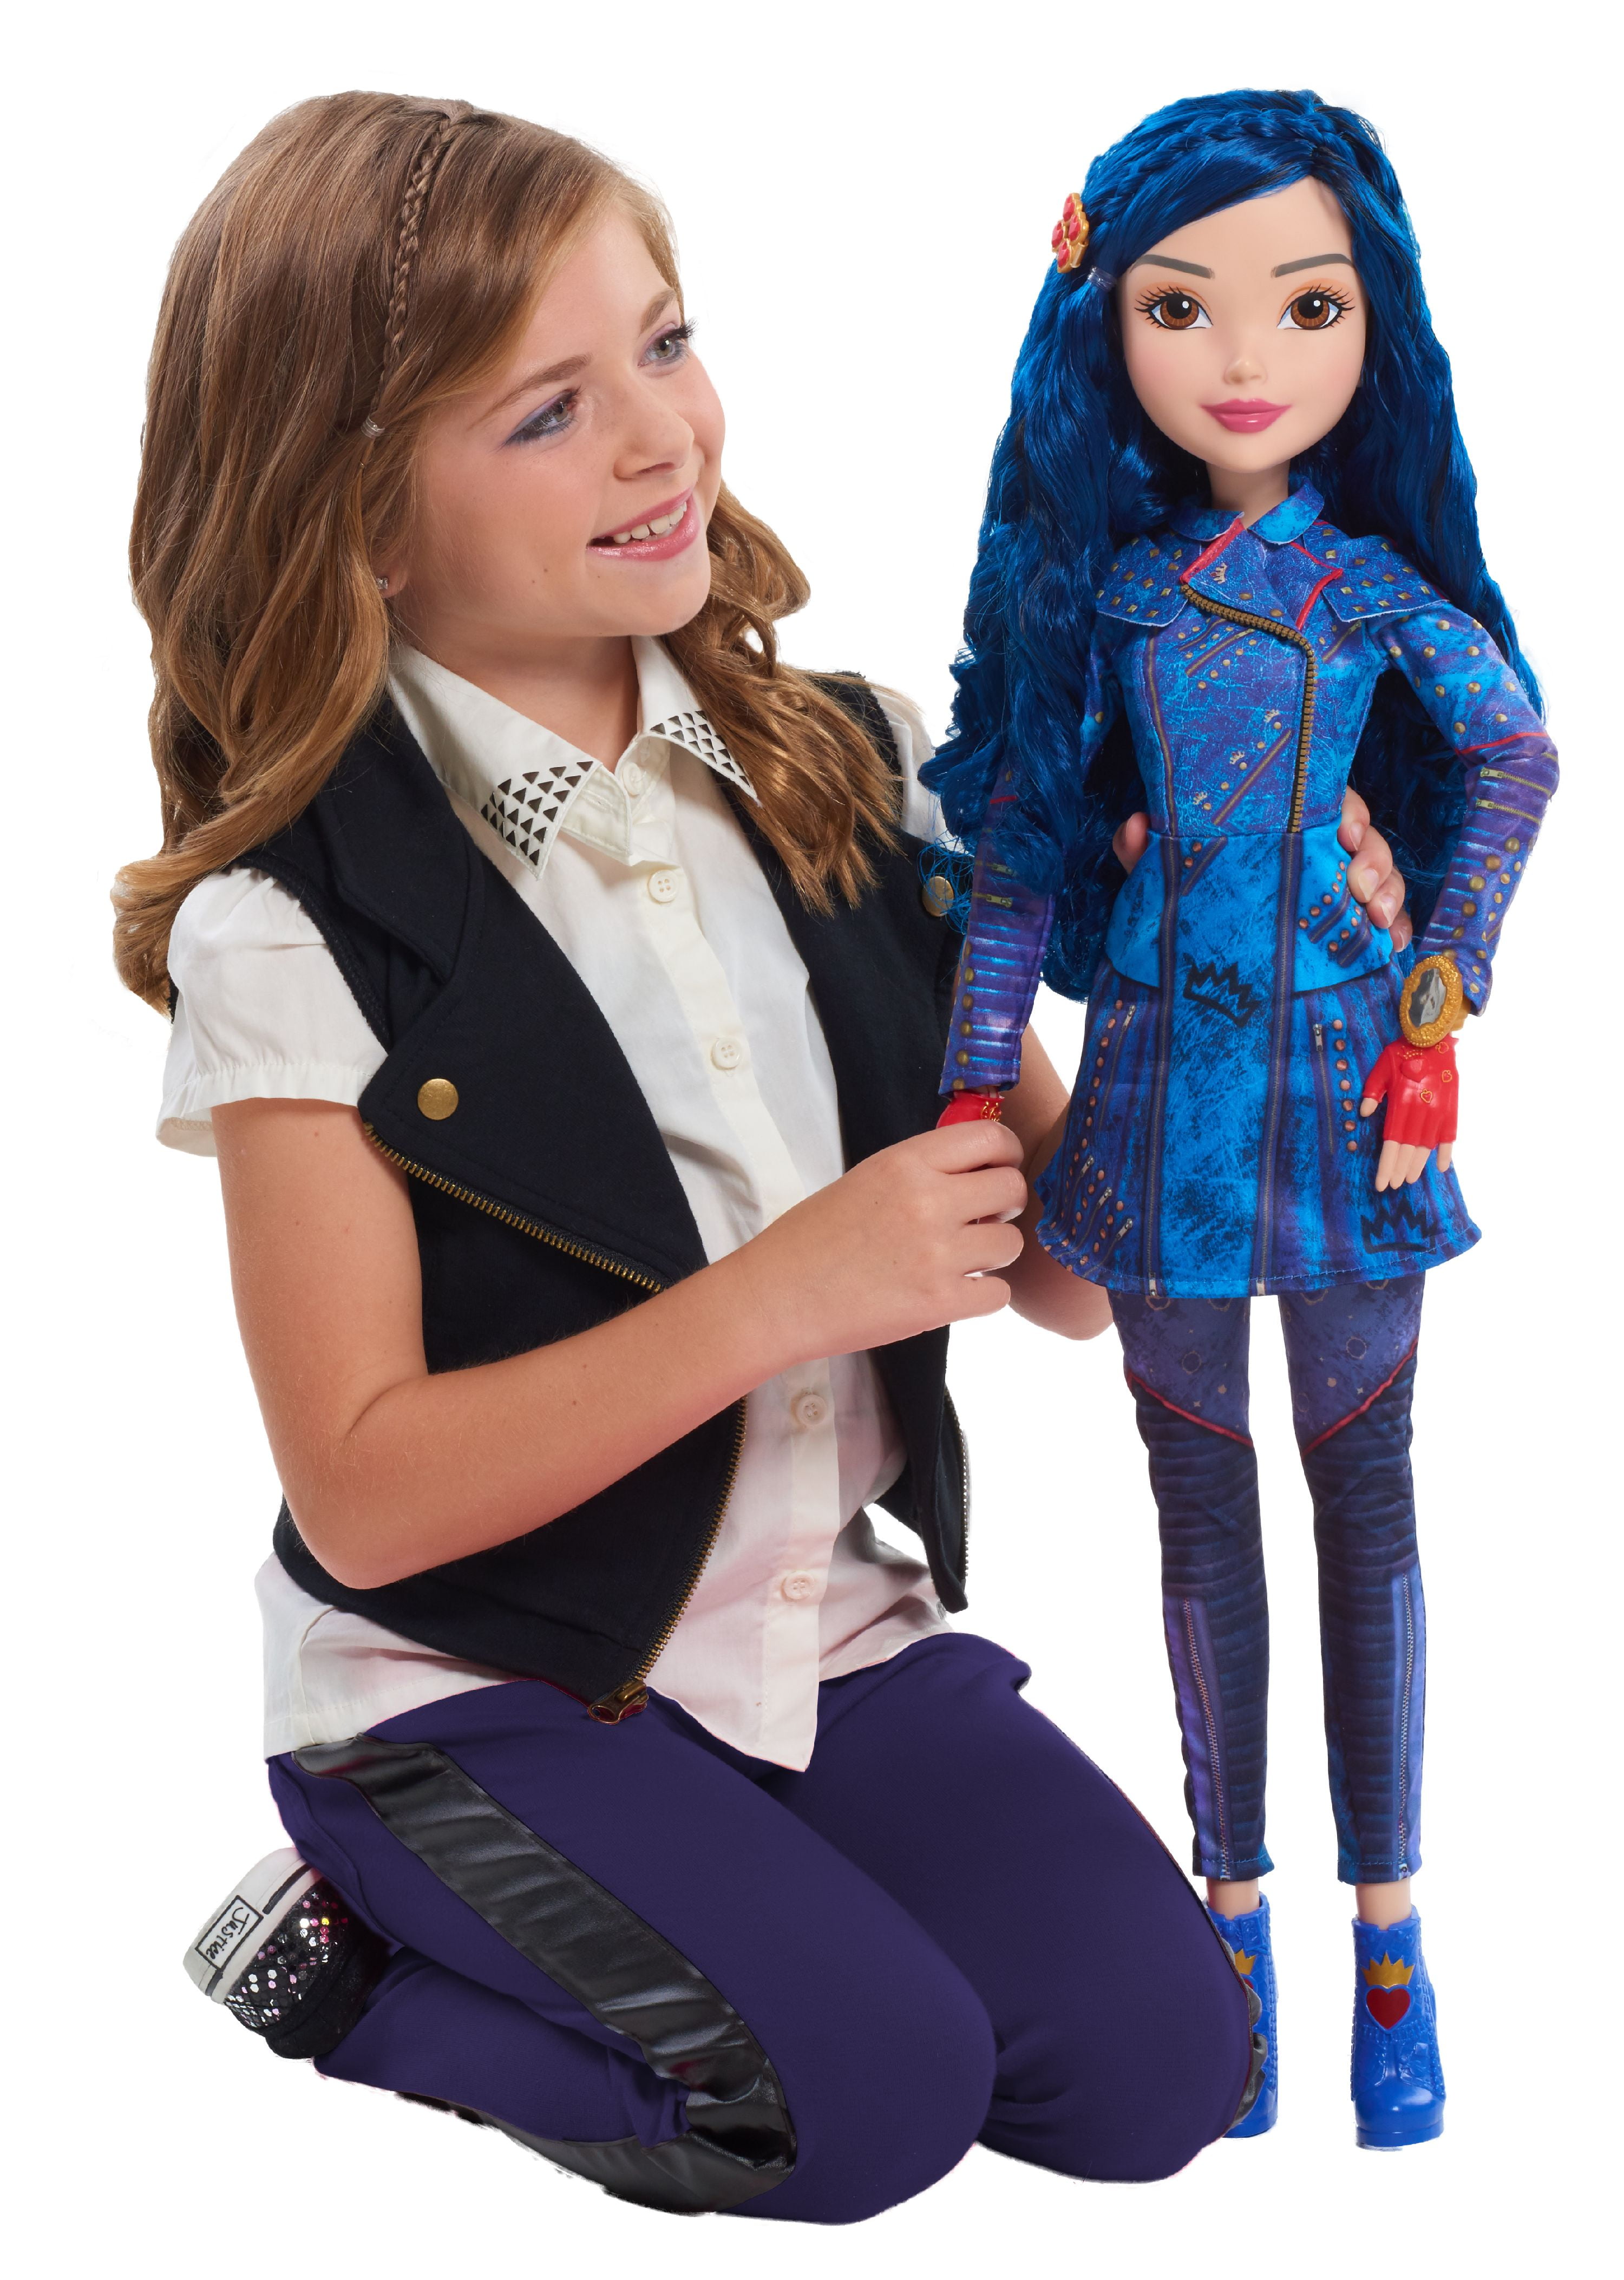 Descendants 3 28 Doll, Uma, Officially Licensed Kids Toys for